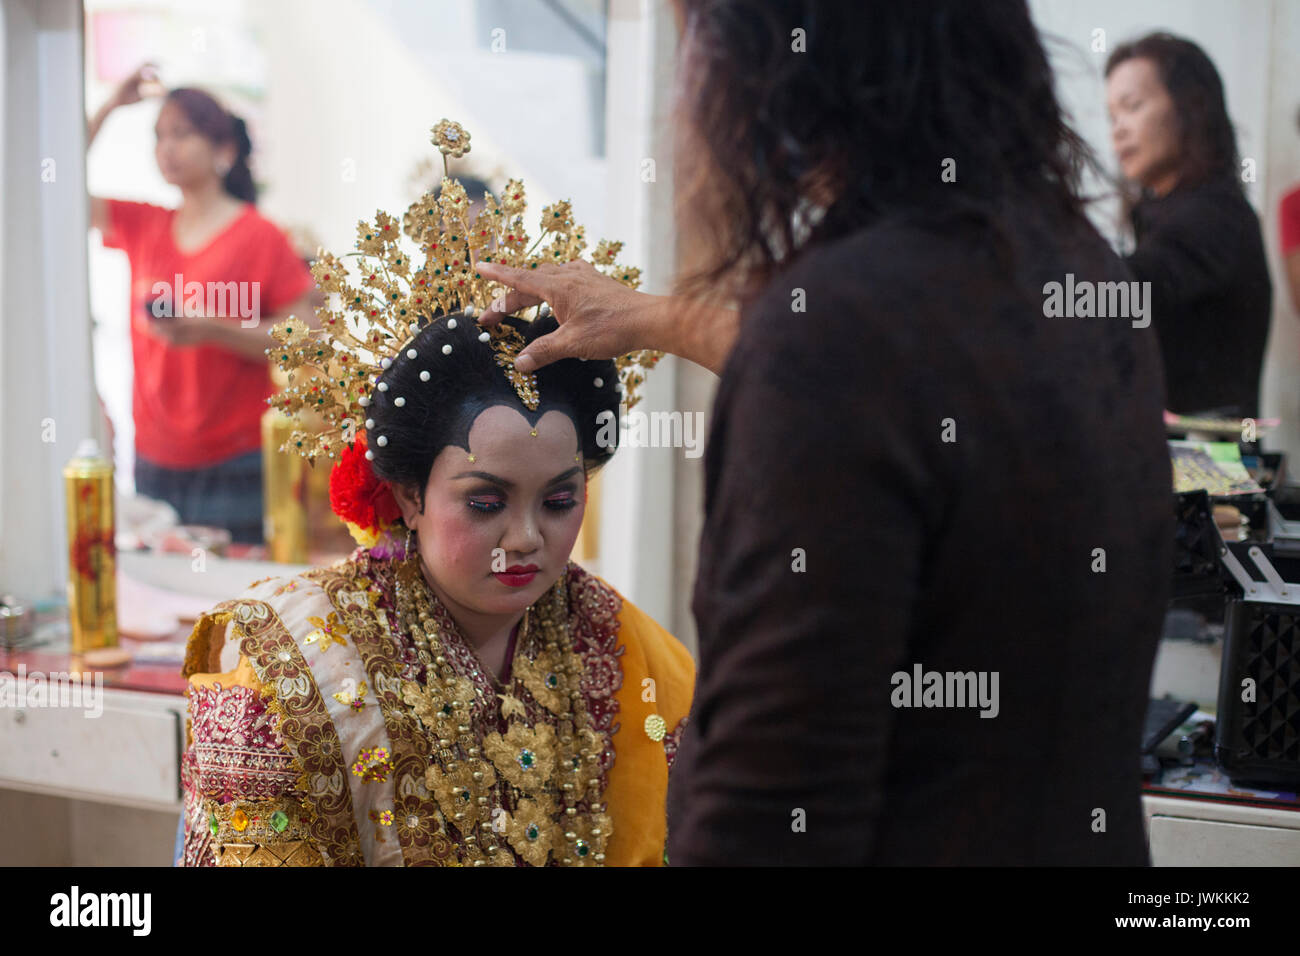 Après avoir terminé le maquillage et l'habillage, la future épouse de Rika, dans sa robe de mariage, Ibu Haji Hasna lui donne une bénédiction finale, plaçant une main sur sa tête et de murmurer une prière. Banque D'Images